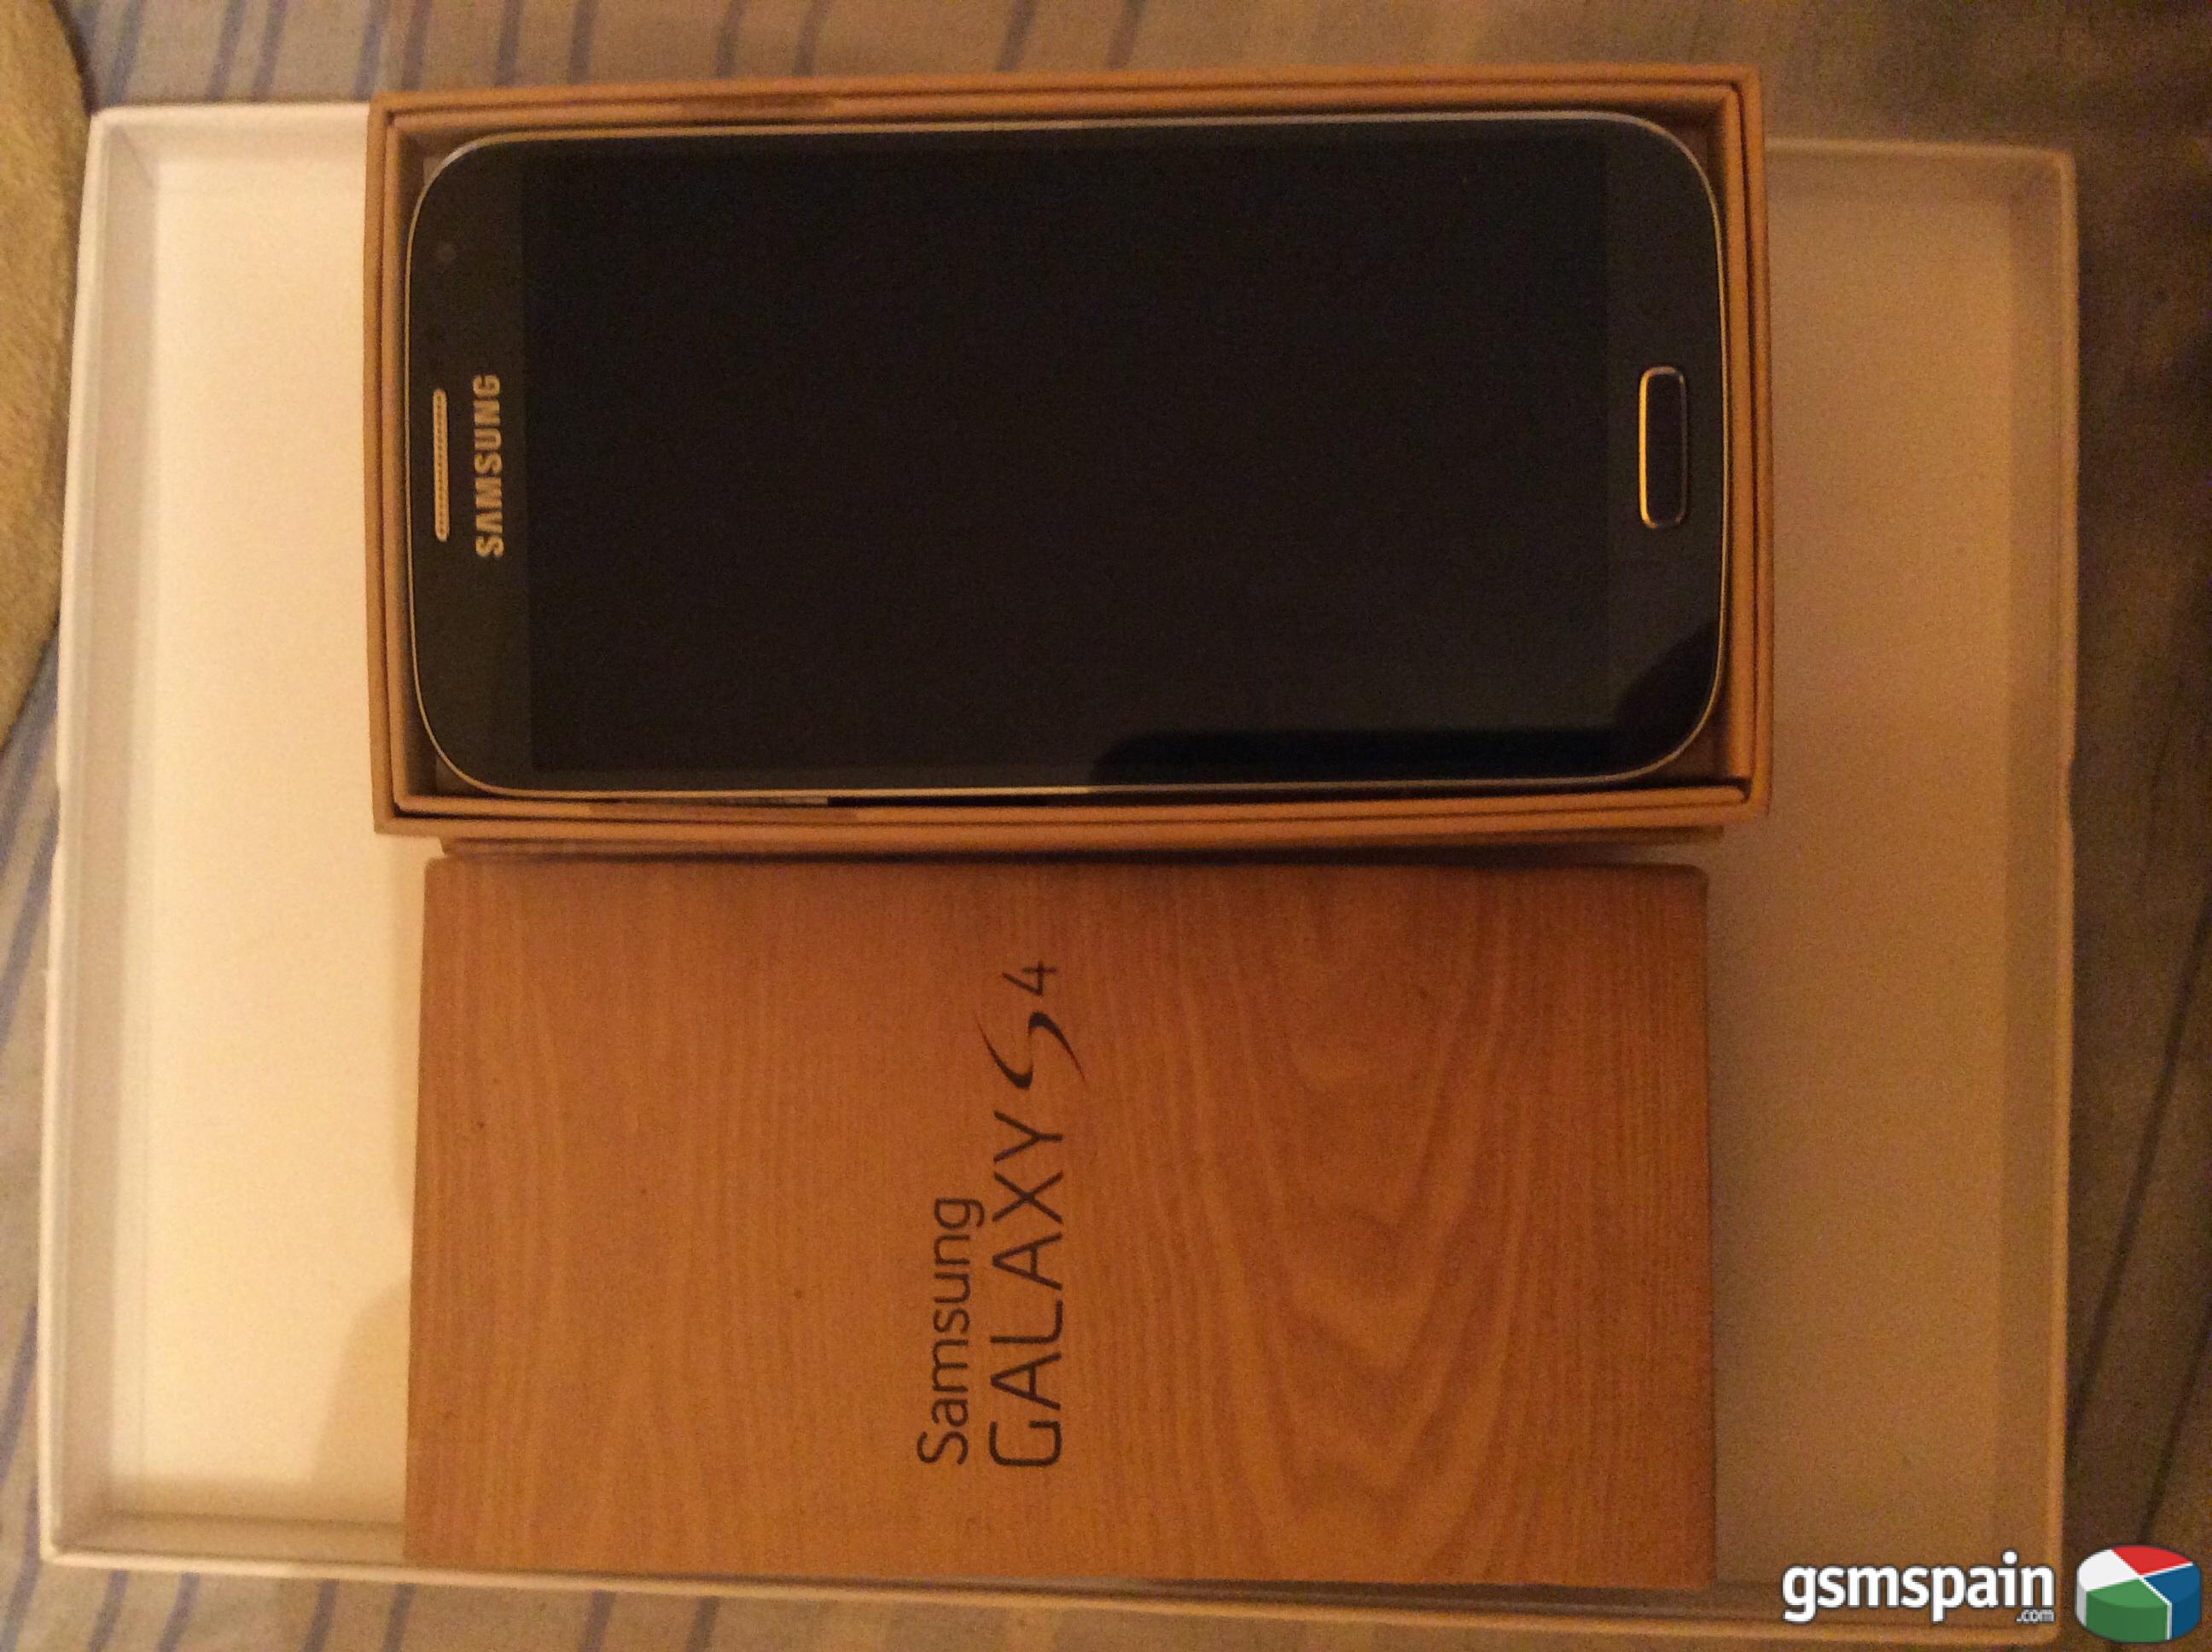 [CAMBIO] Samsung galaxy s4 libre